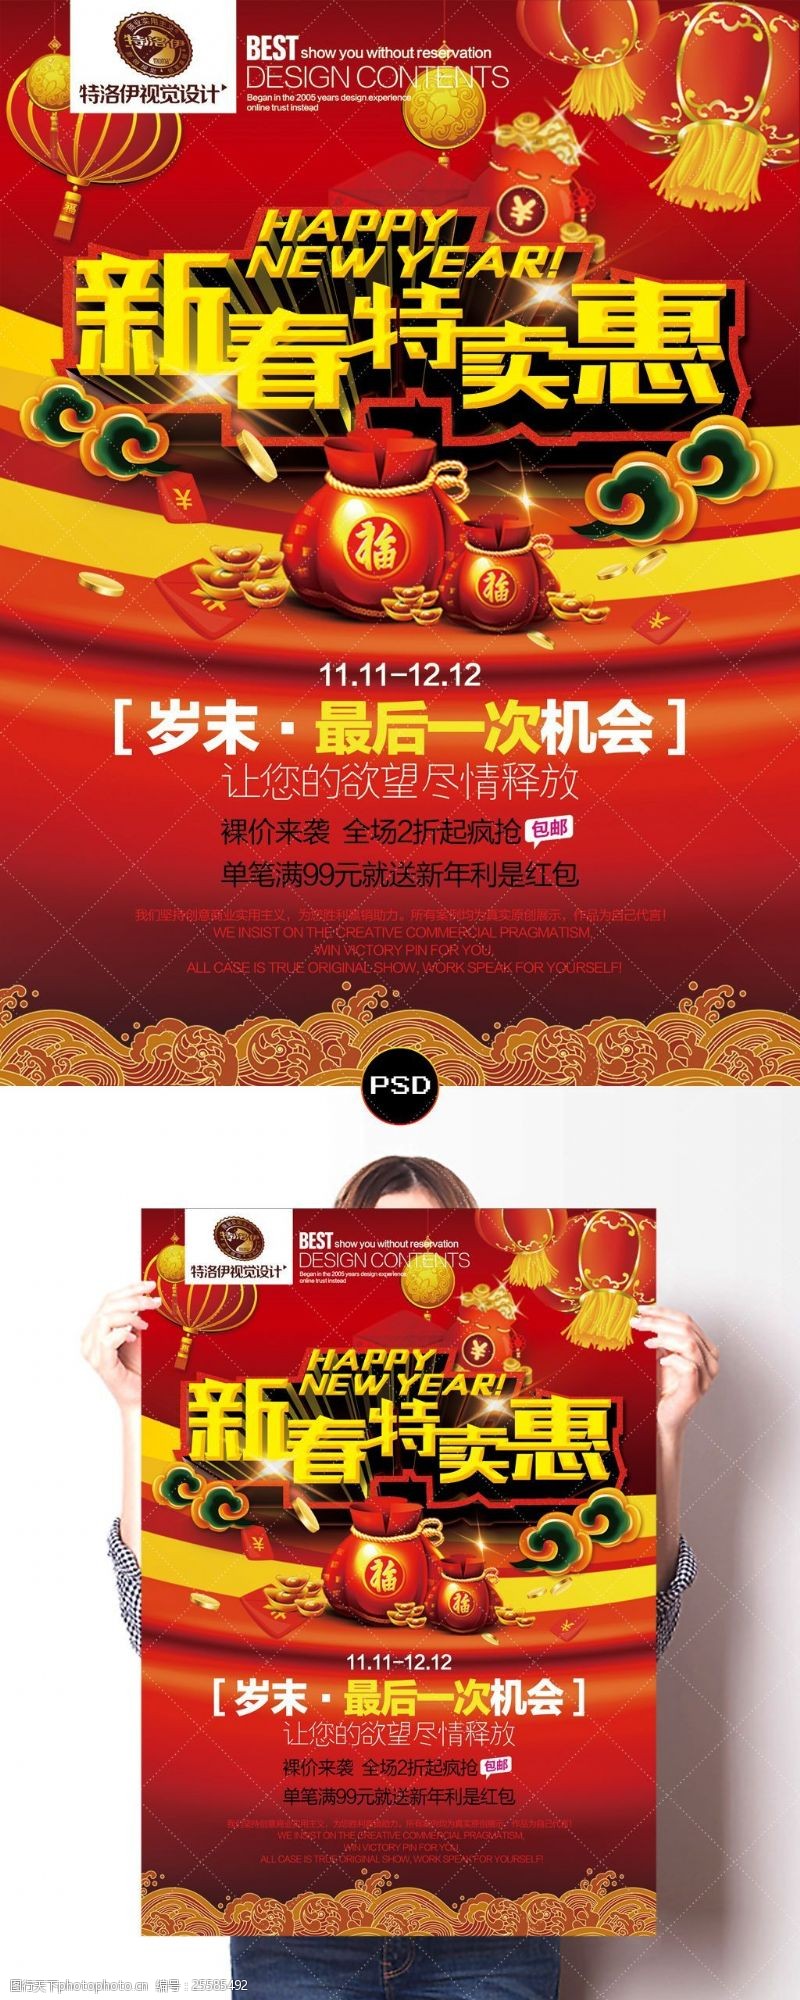 超日新年贺岁红色新春特卖惠节日喜庆促销海报PSD模板